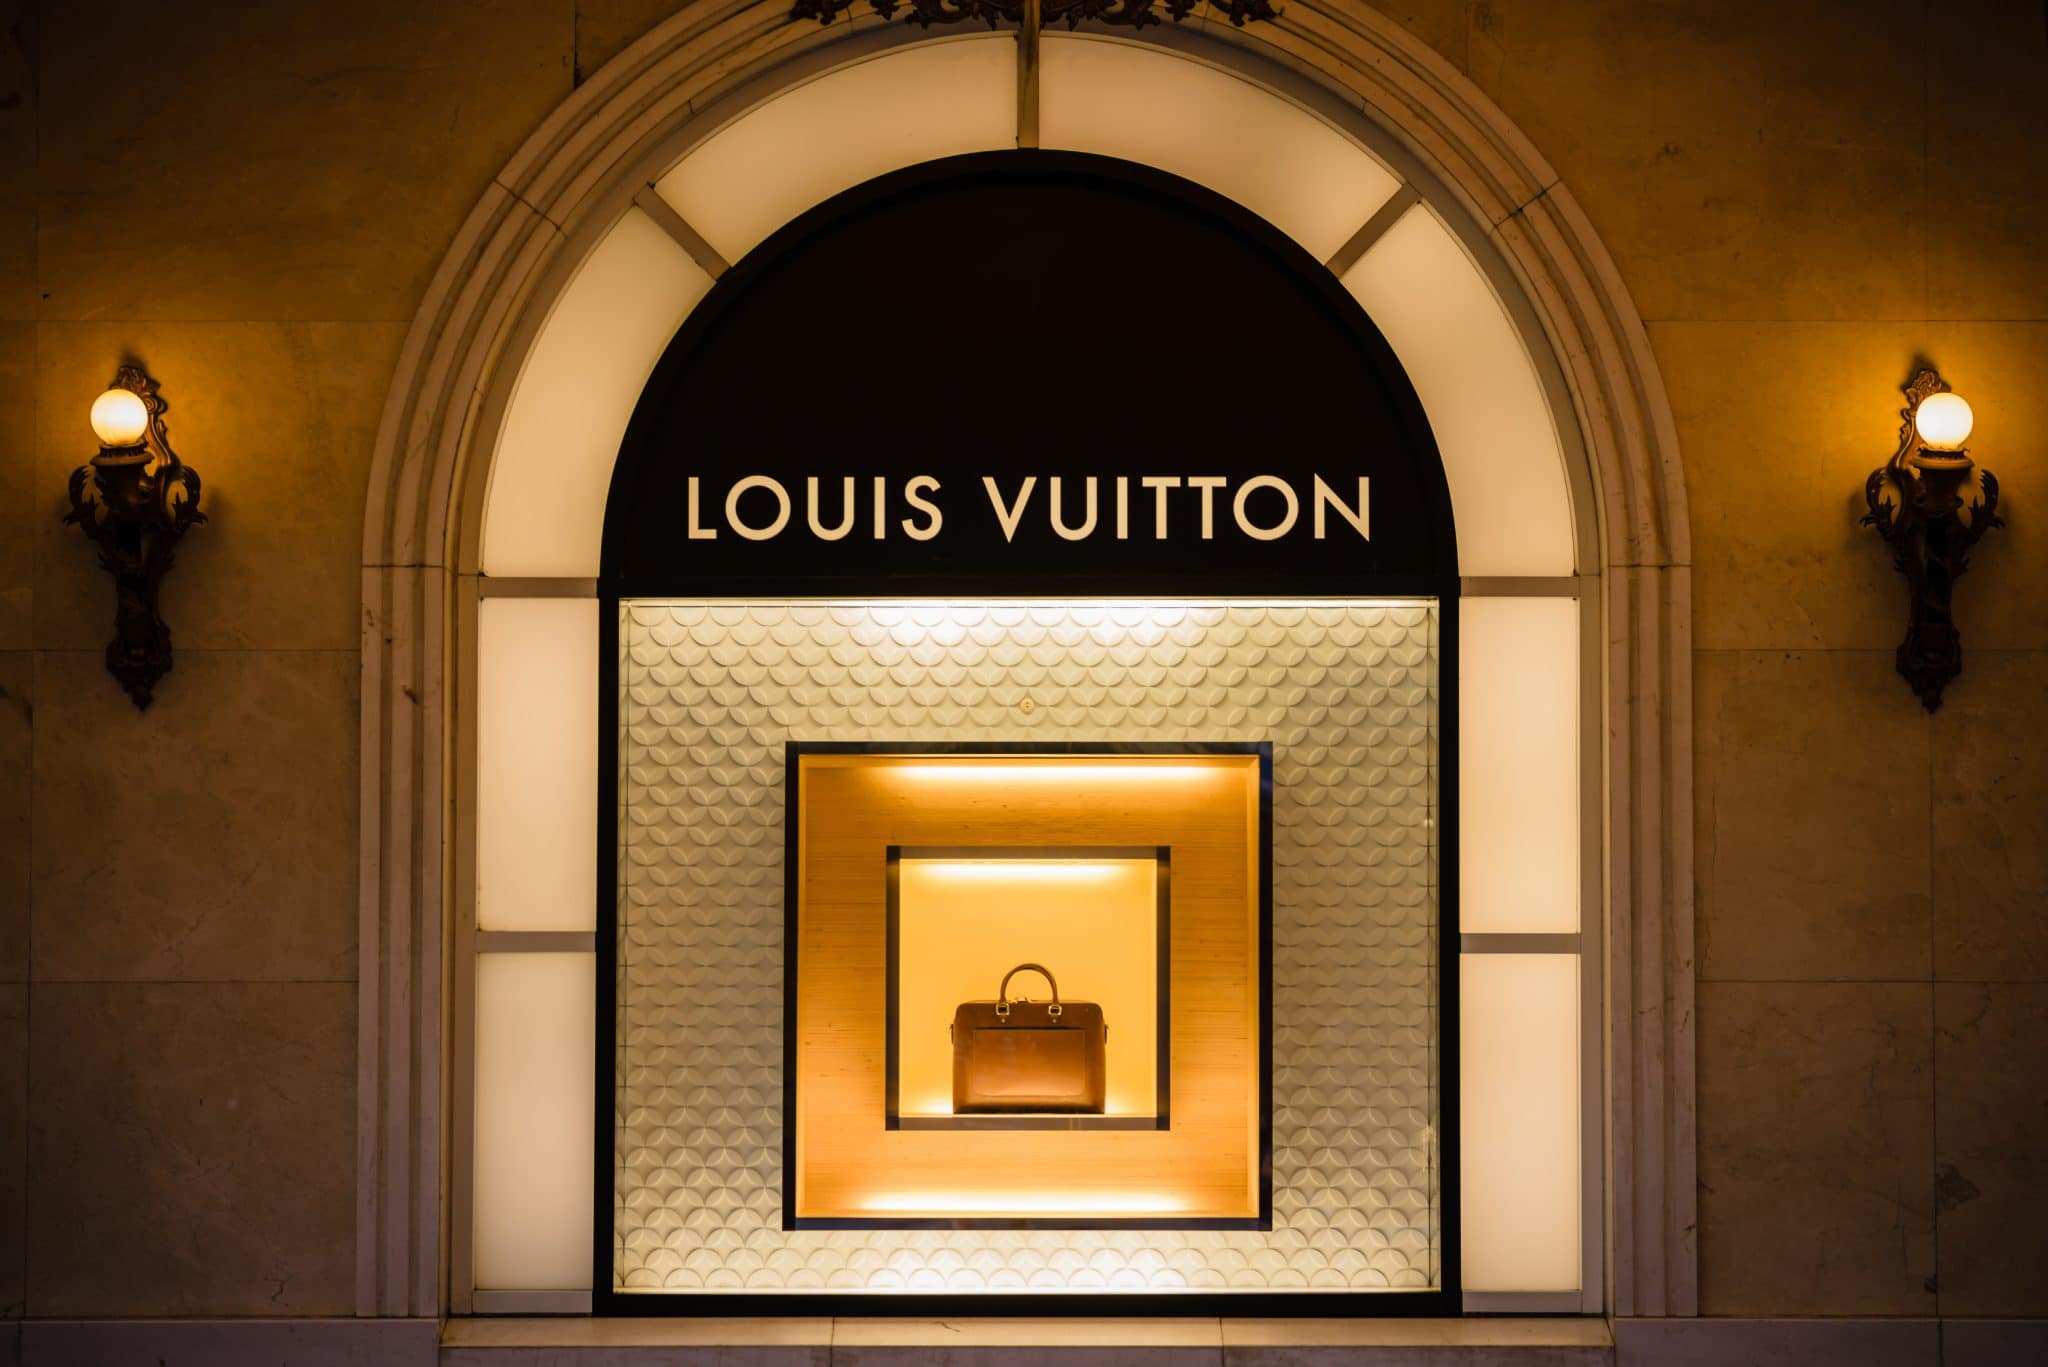 Statussymbol Kopfhörer: Louis Vuitton treibt es auf die Spitze